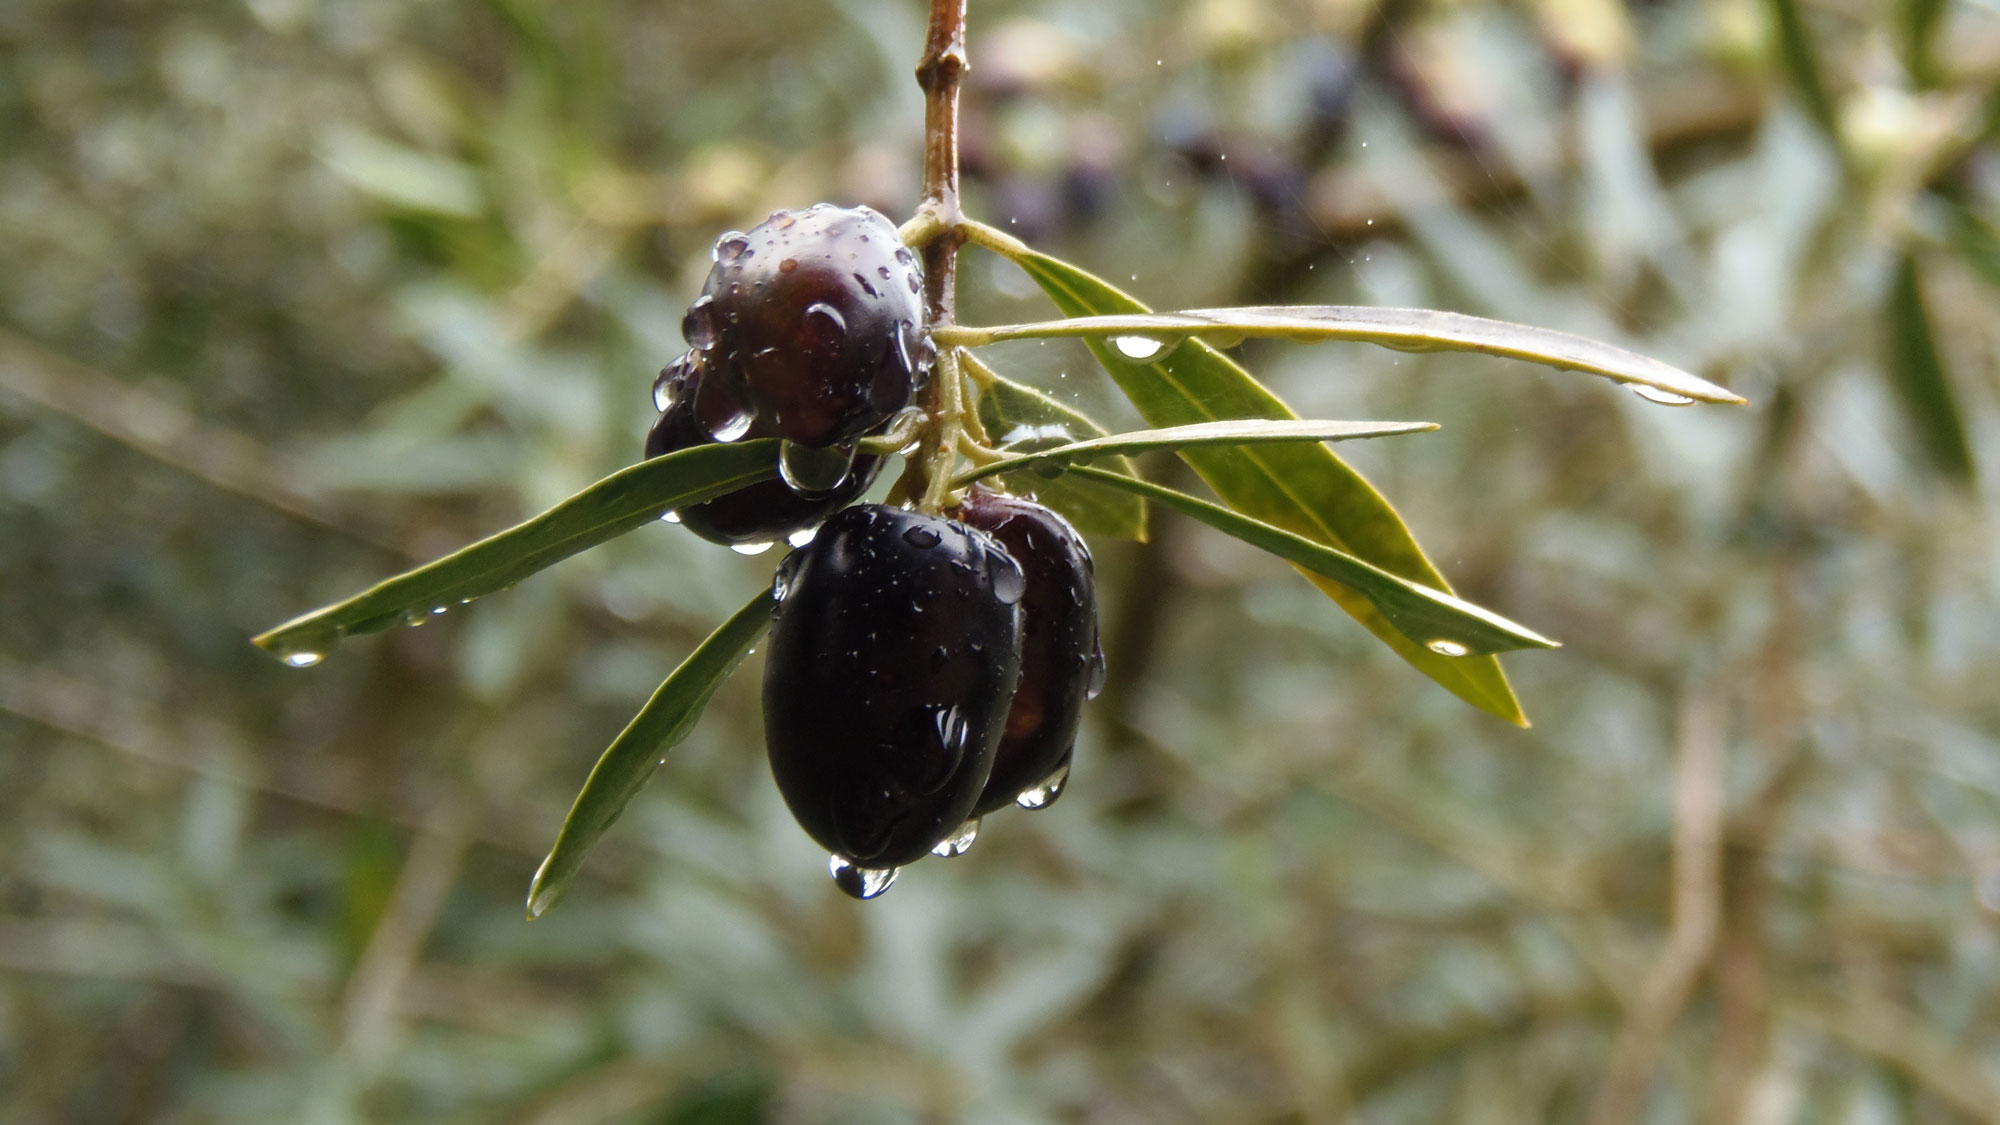 arve Bio-Olivenöl kommt aus der Provinz Córdoba in Andalusien und trägt das staatlich kontrollierte Ökosiegel des C.A.A.E. – das andalusische Kontrollkomitee für die biologische Landwirtschaft.